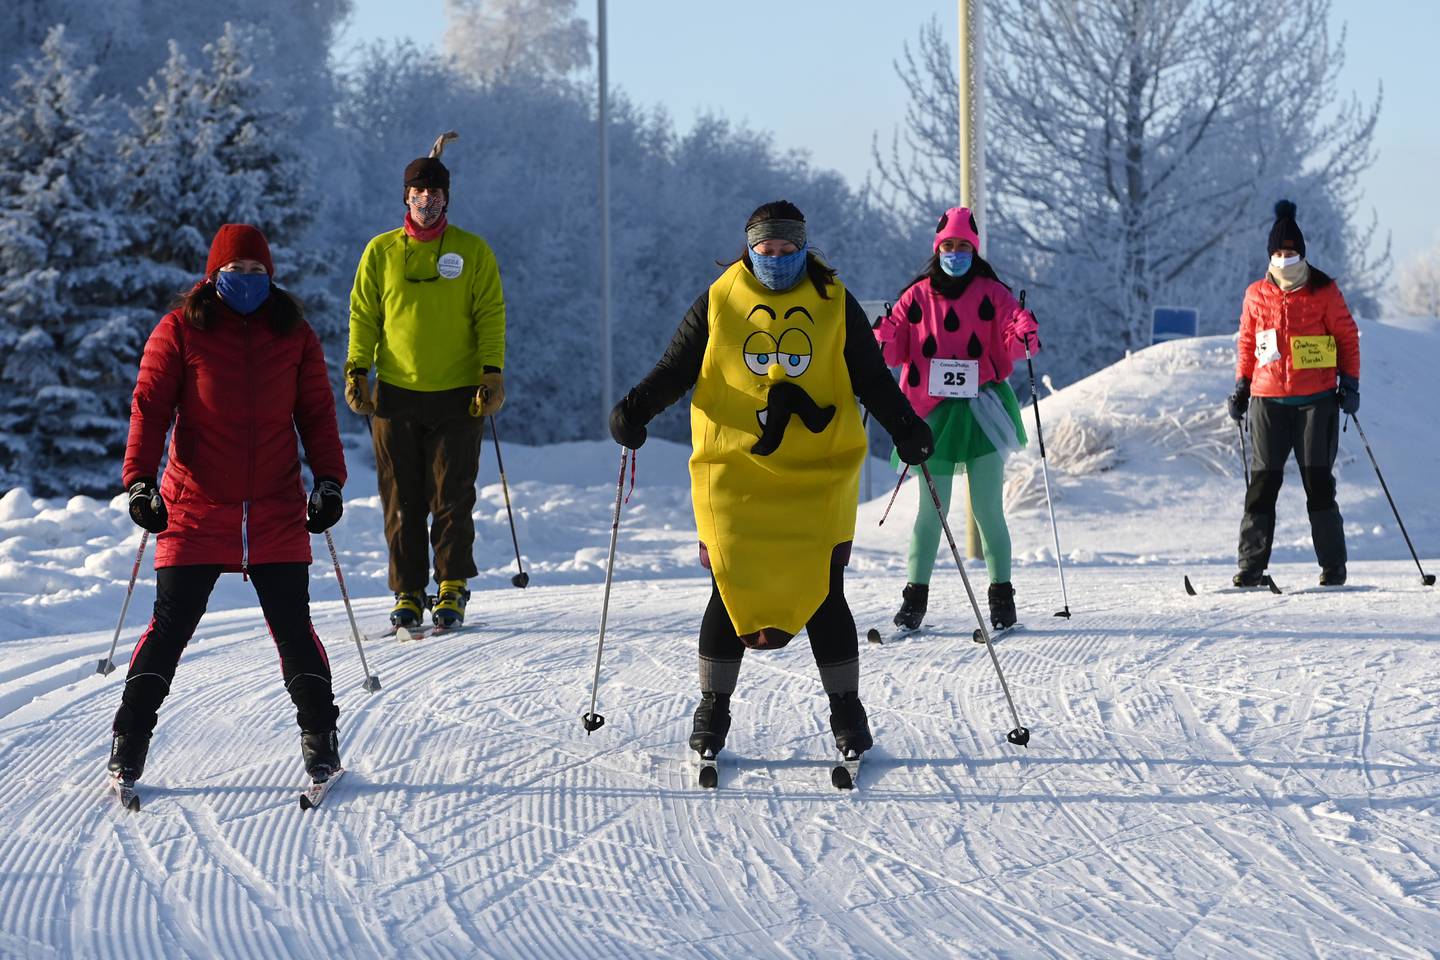 Alaskan skis for women